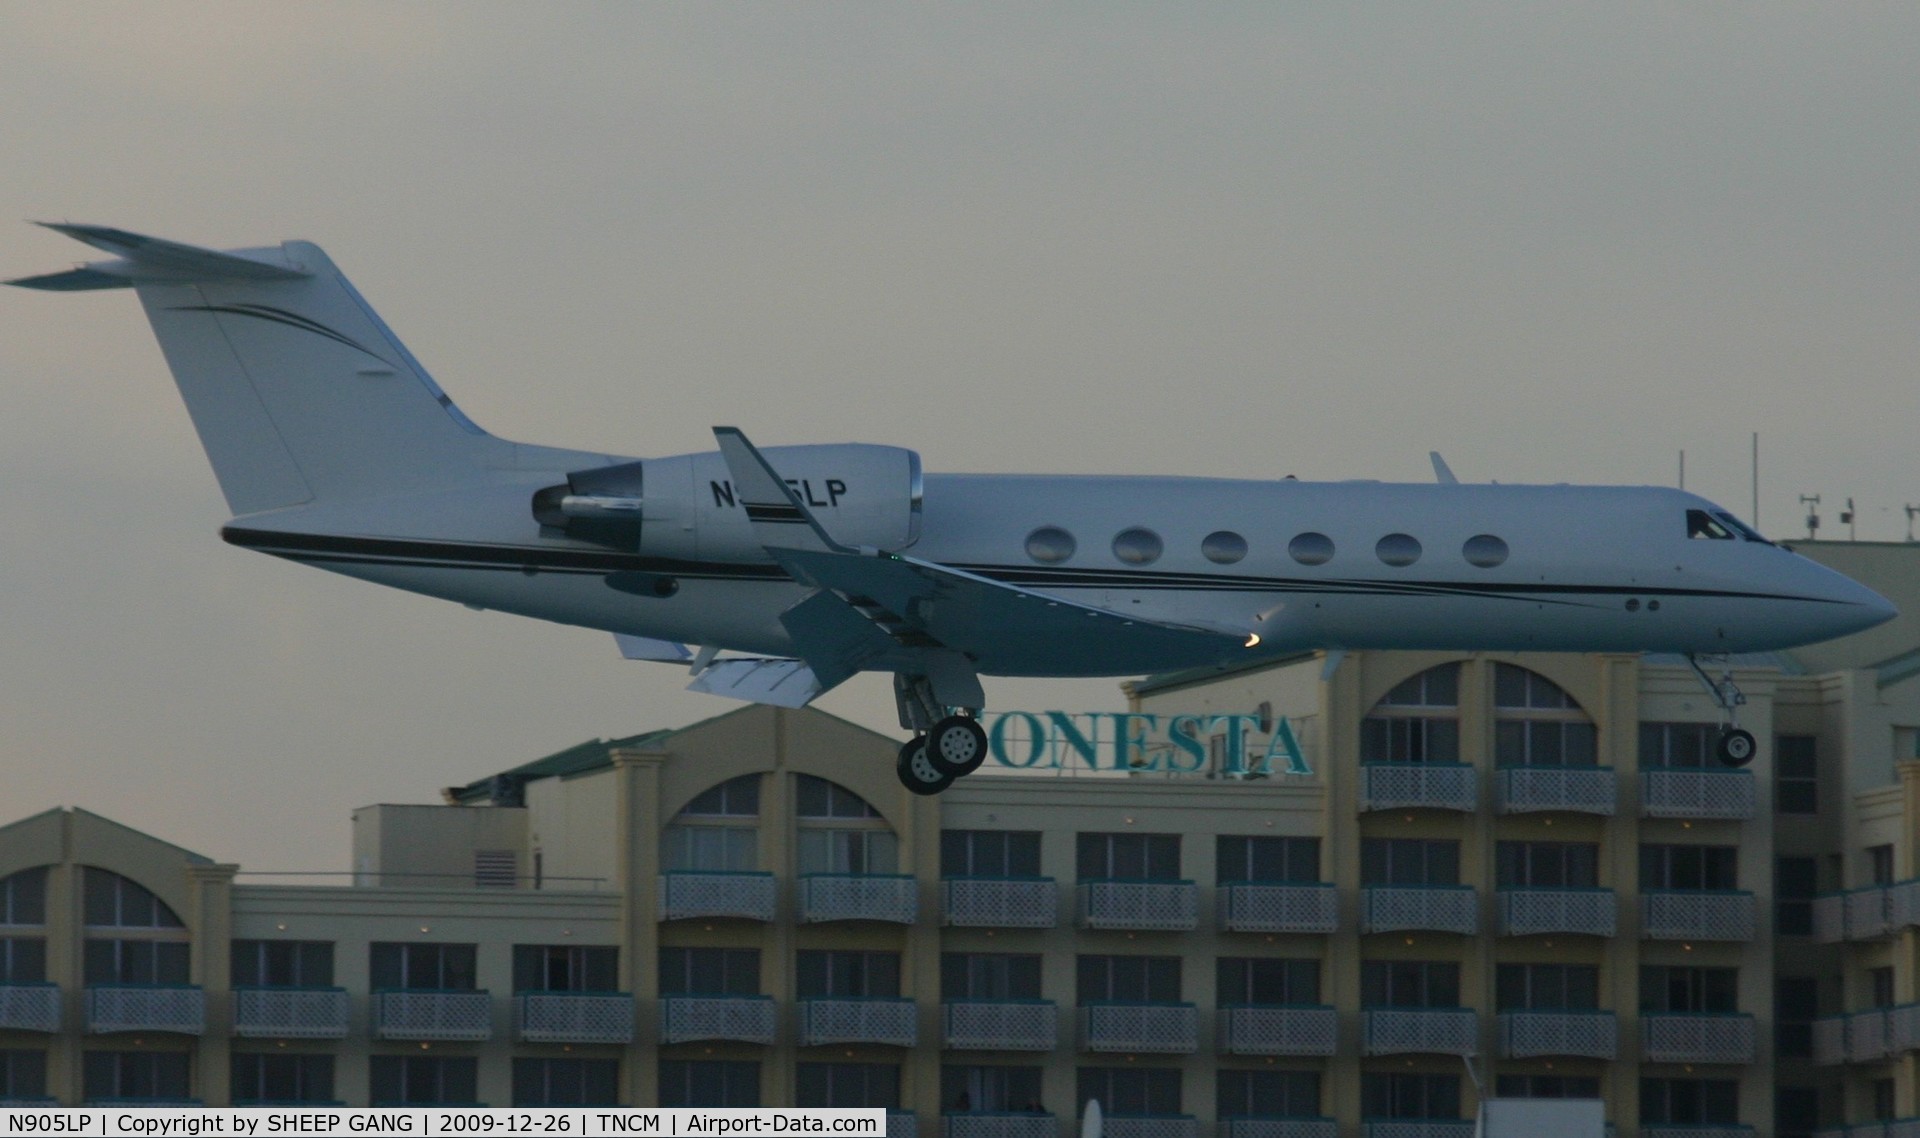 N905LP, 1997 Gulfstream Aerospace G-IV C/N 1321, N905LP just over Maho beach for landing on runway 10